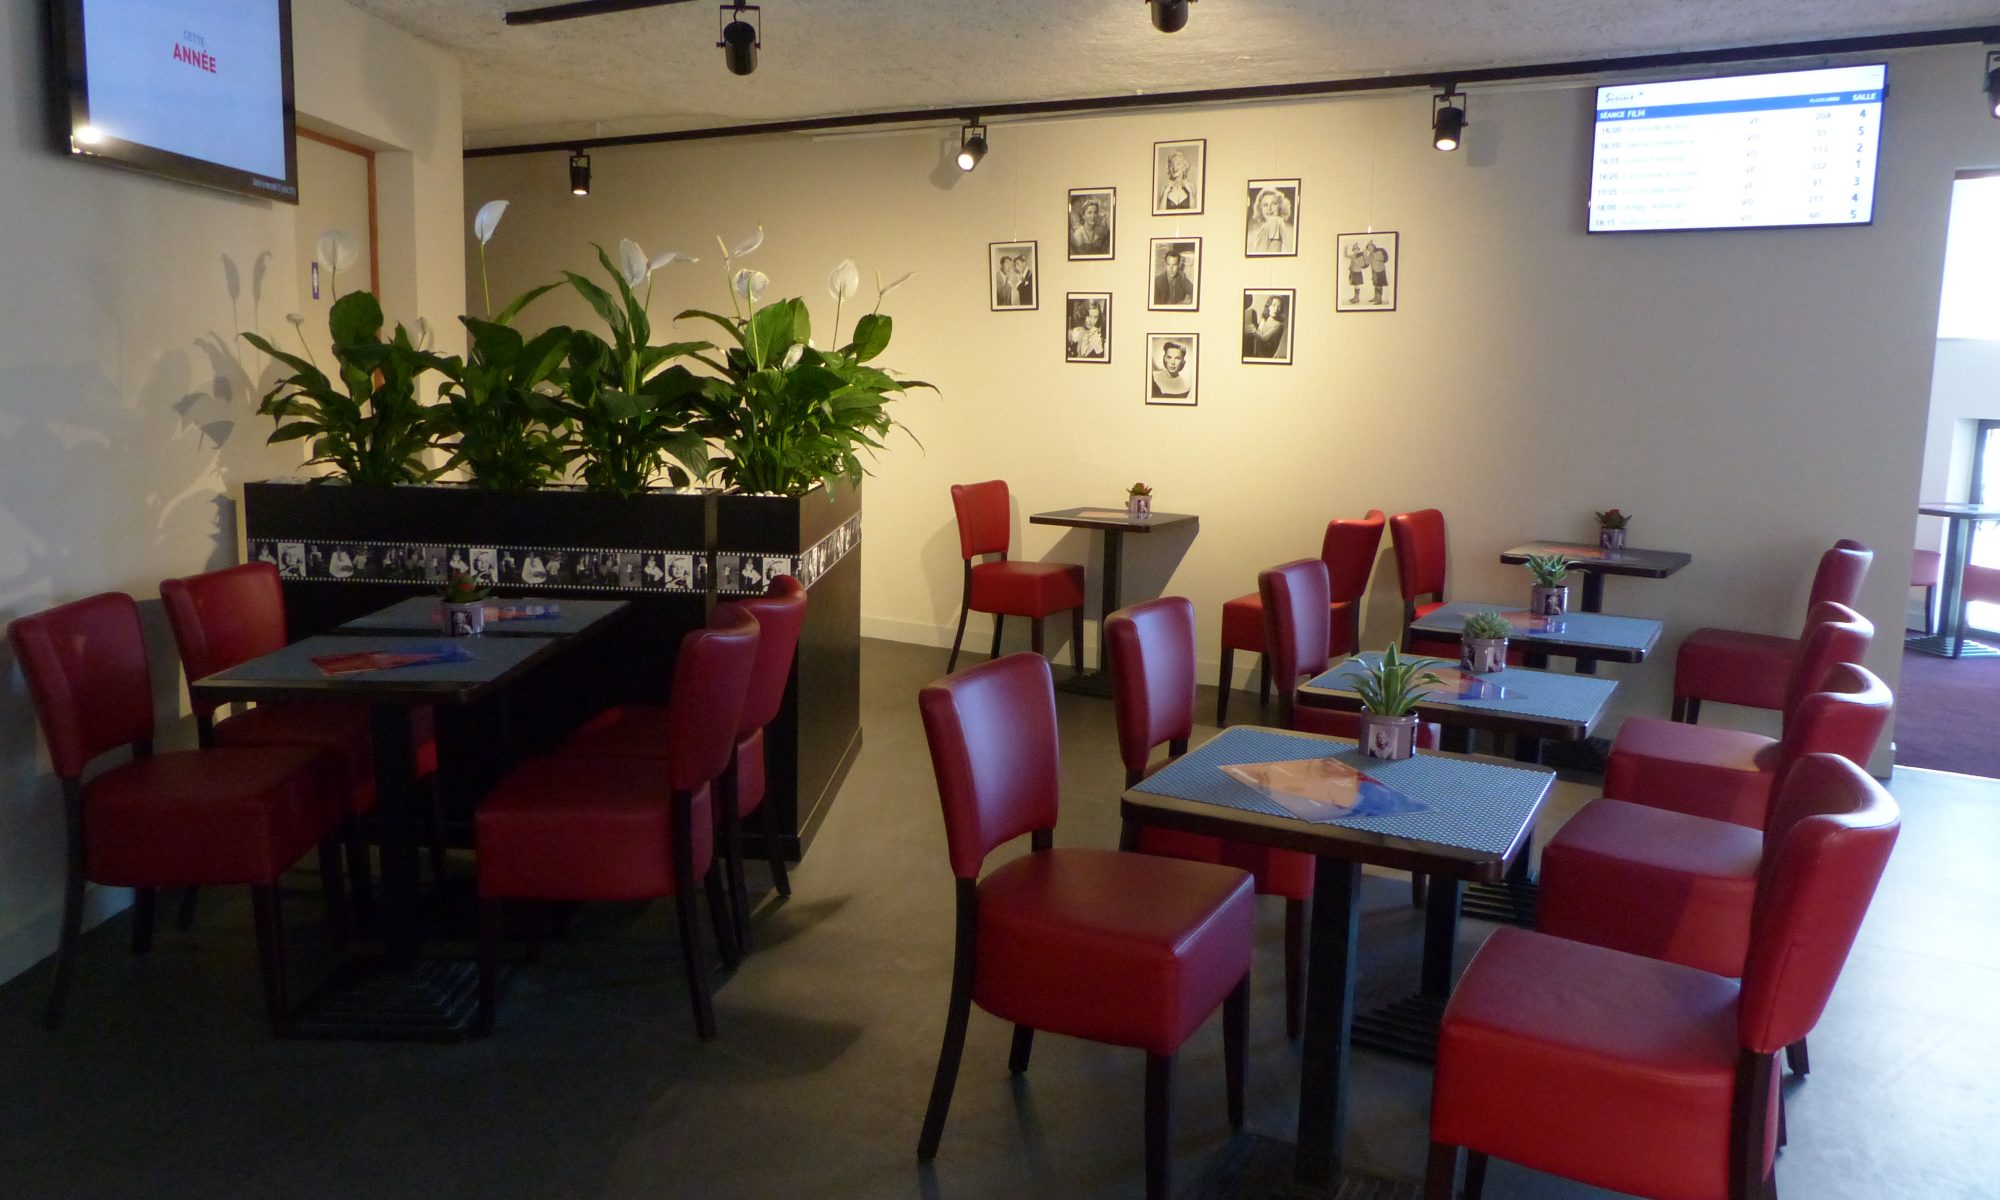 Le Café du Sirius - bar salon de thé restaurant - Le Havre